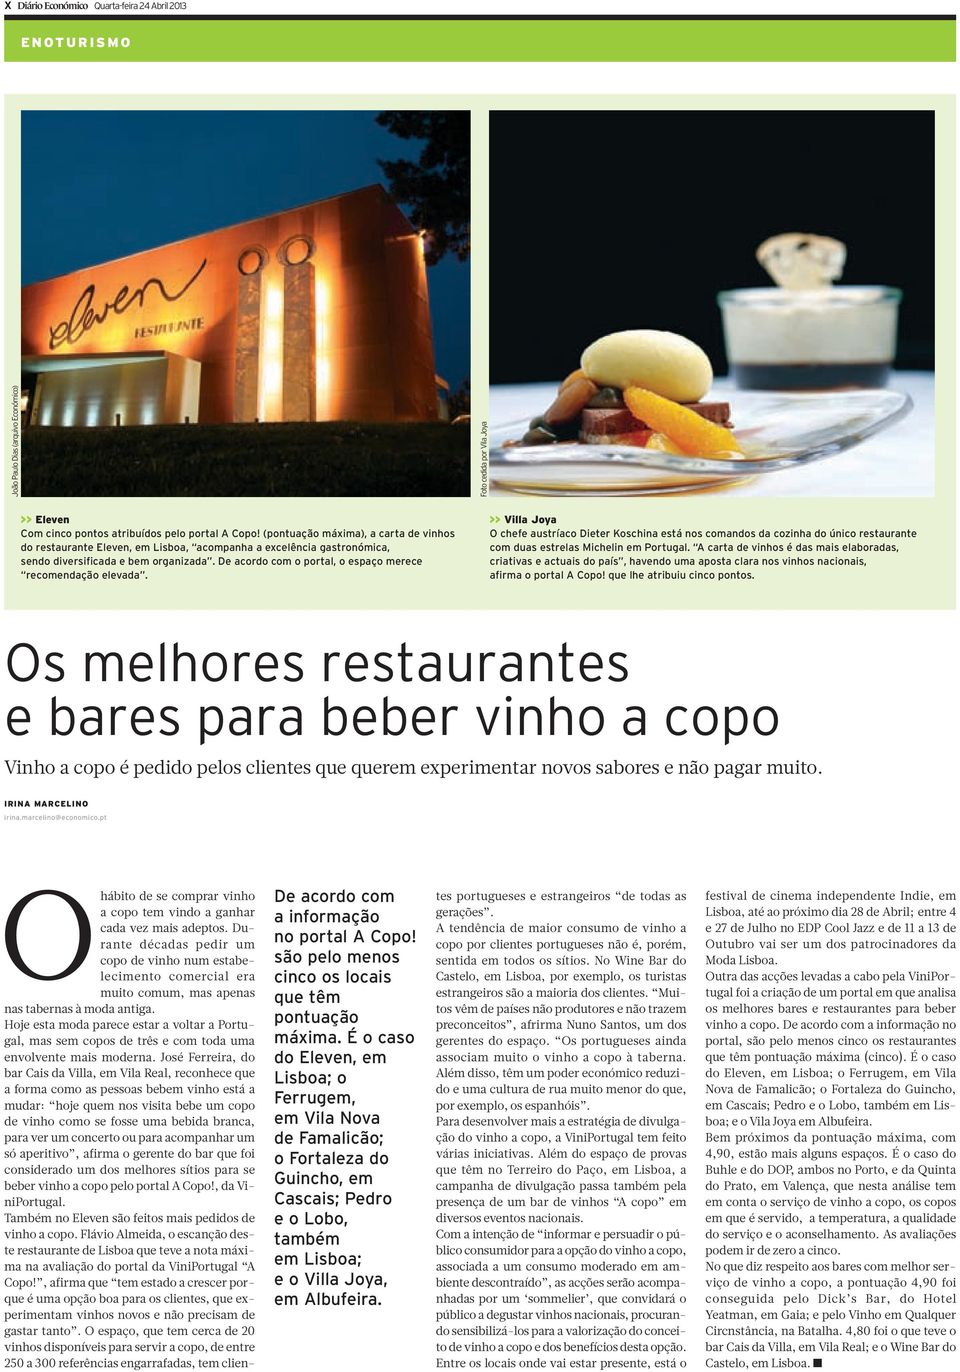 De acordo com o portal, o espaço merece recomendação elevada. >> Villa Joya O chefe austríaco Dieter Koschina está nos comandos da cozinha do único restaurante com duas estrelas Michelin em Portugal.